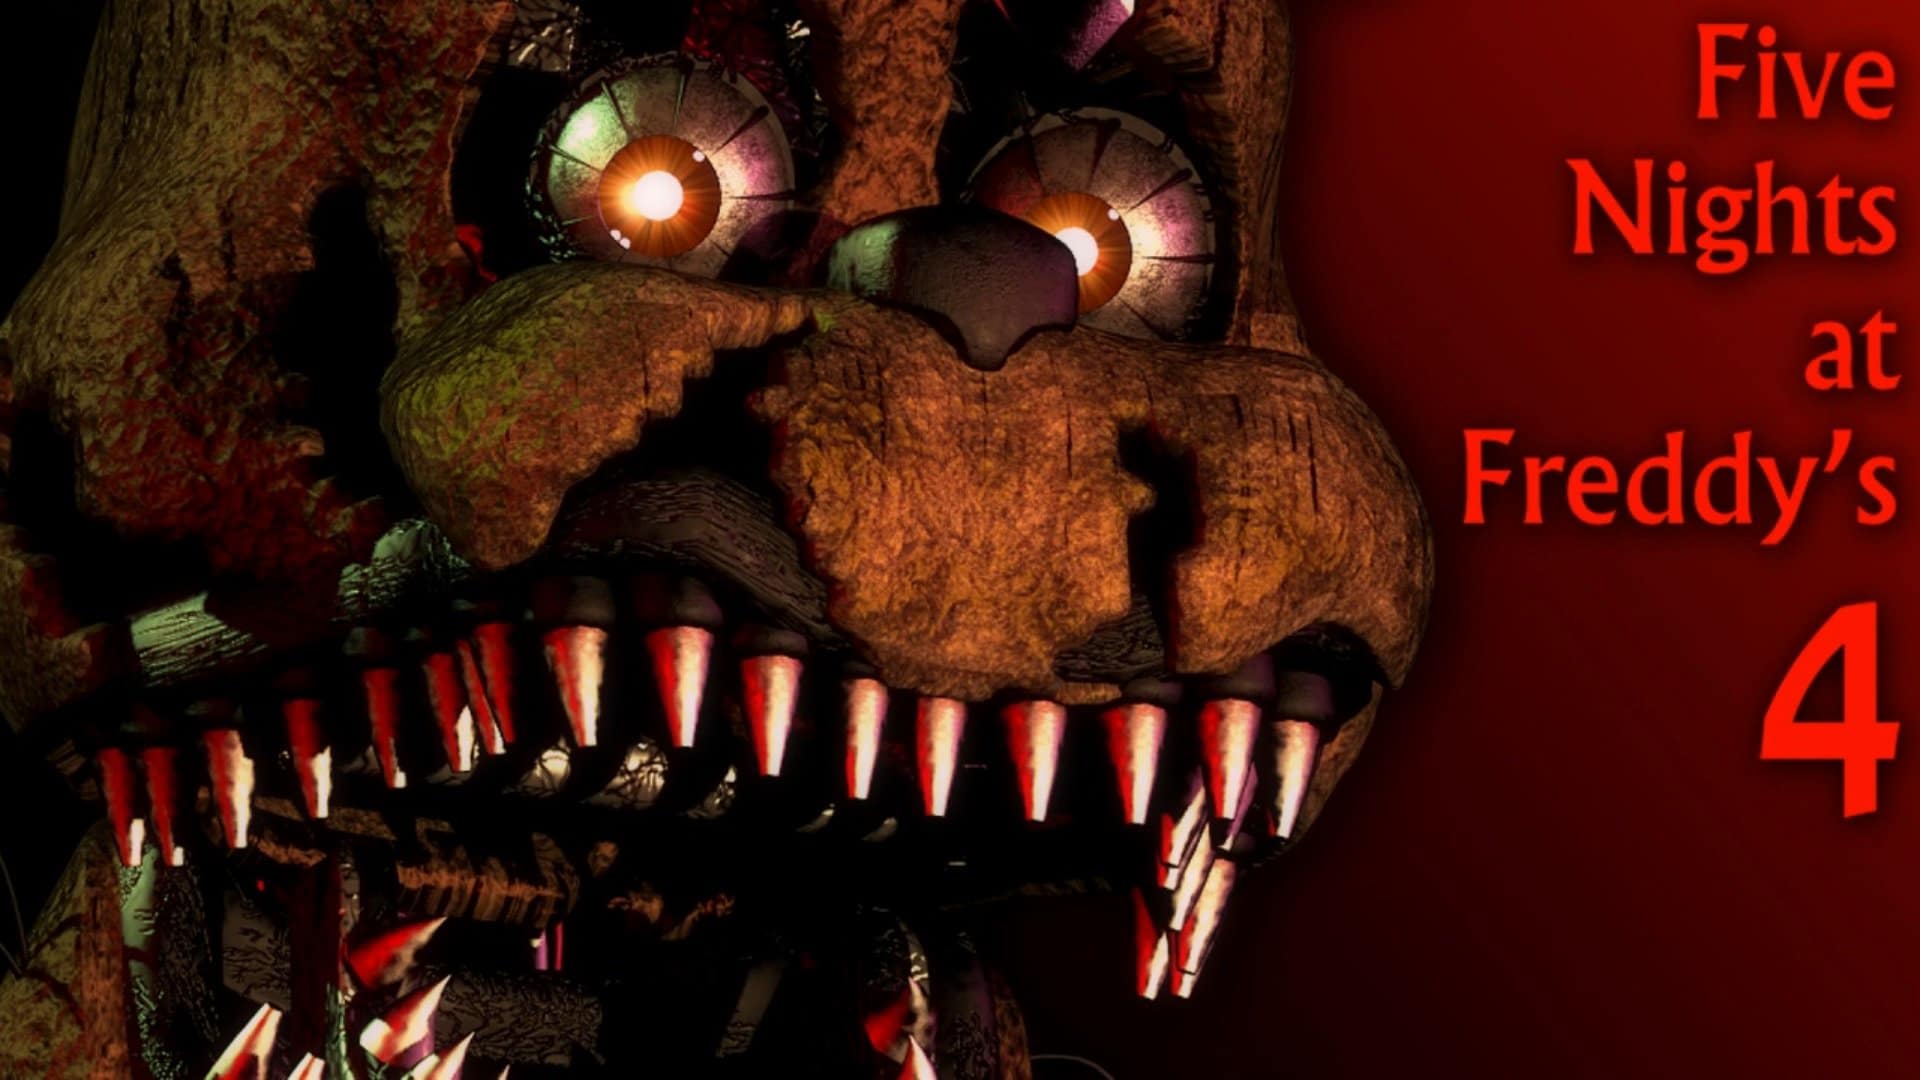 Five Nights at Freddy’s 4 también ha sido listado para el 29 de noviembre en Nintendo Switch